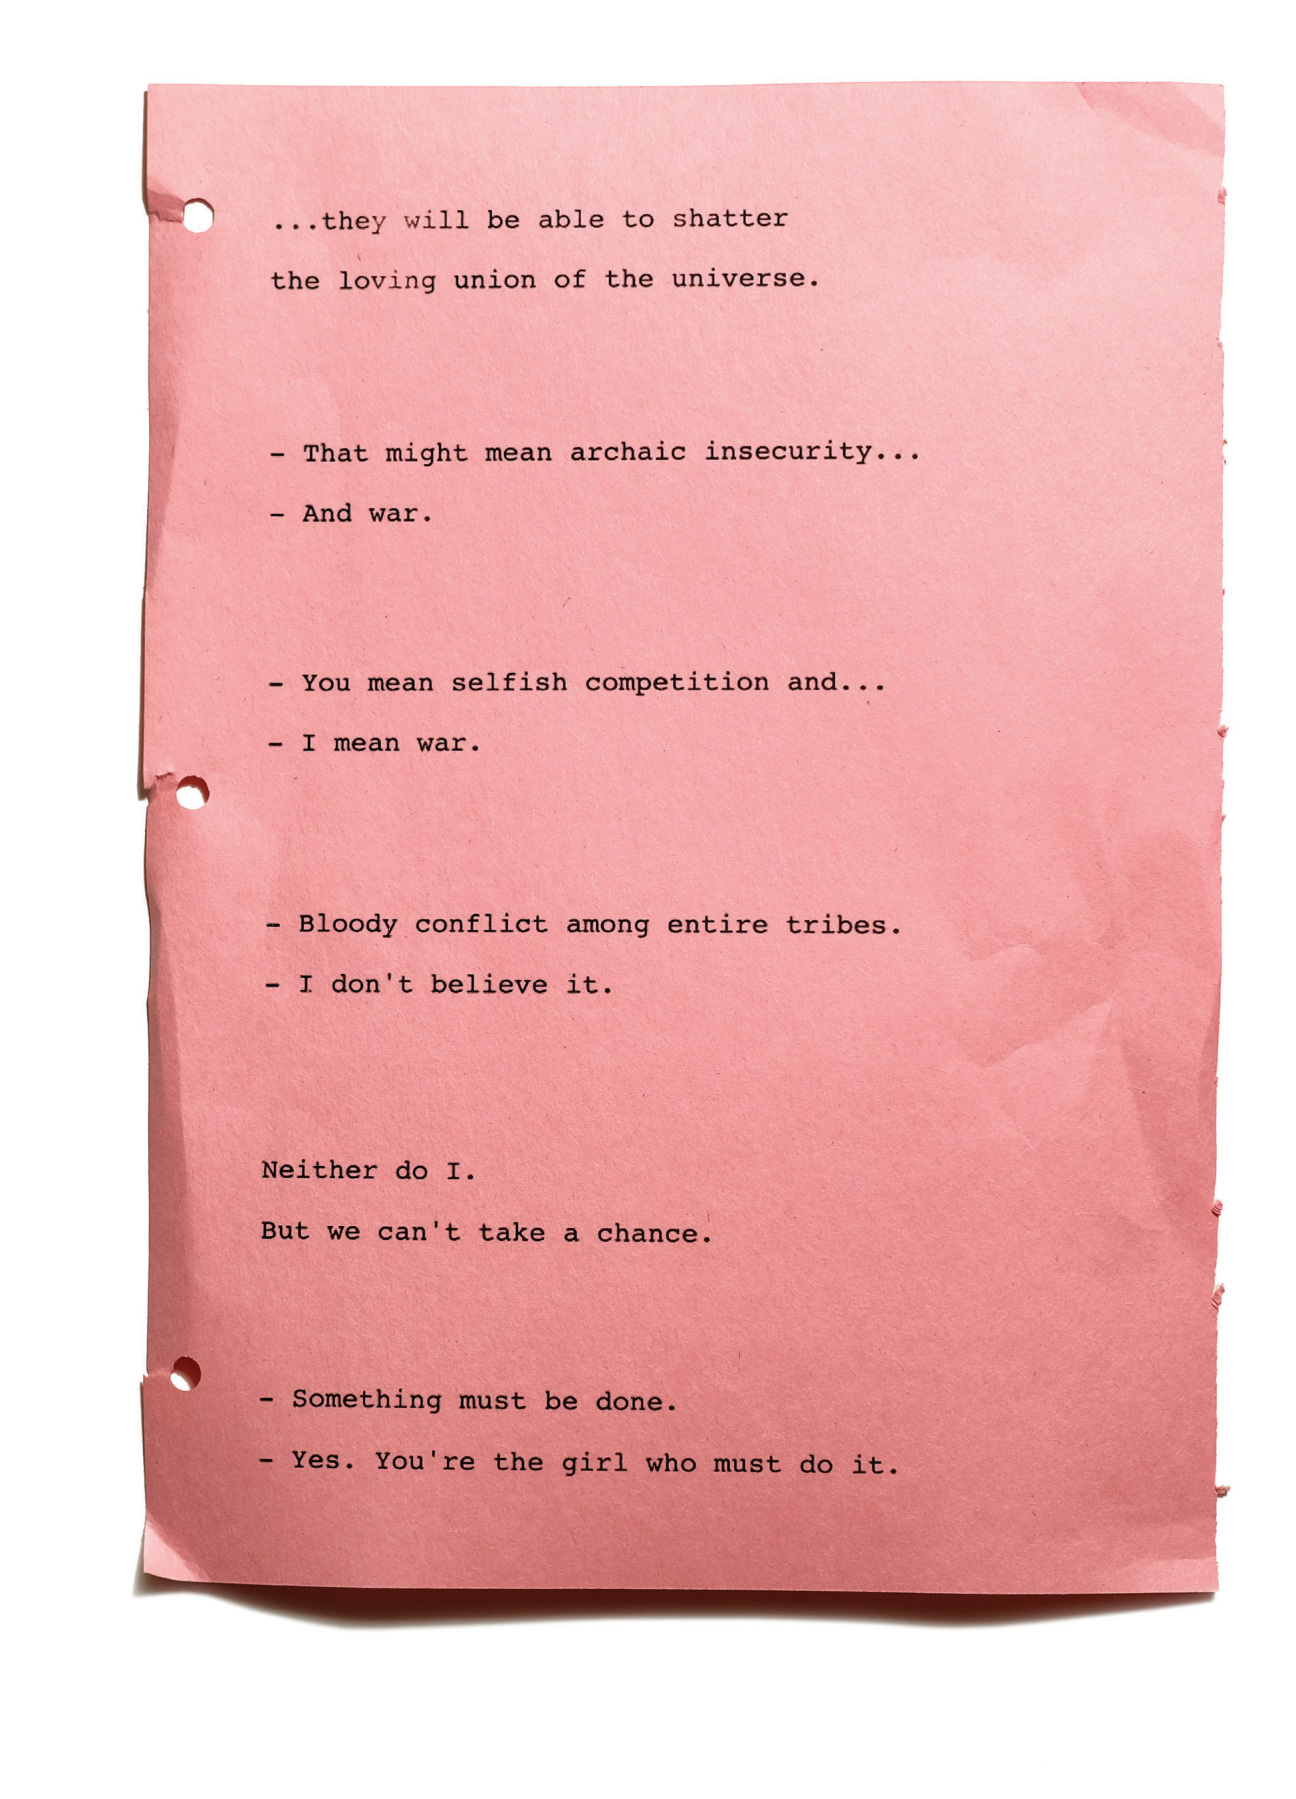 Script excerpt from Barbarella, 1968.